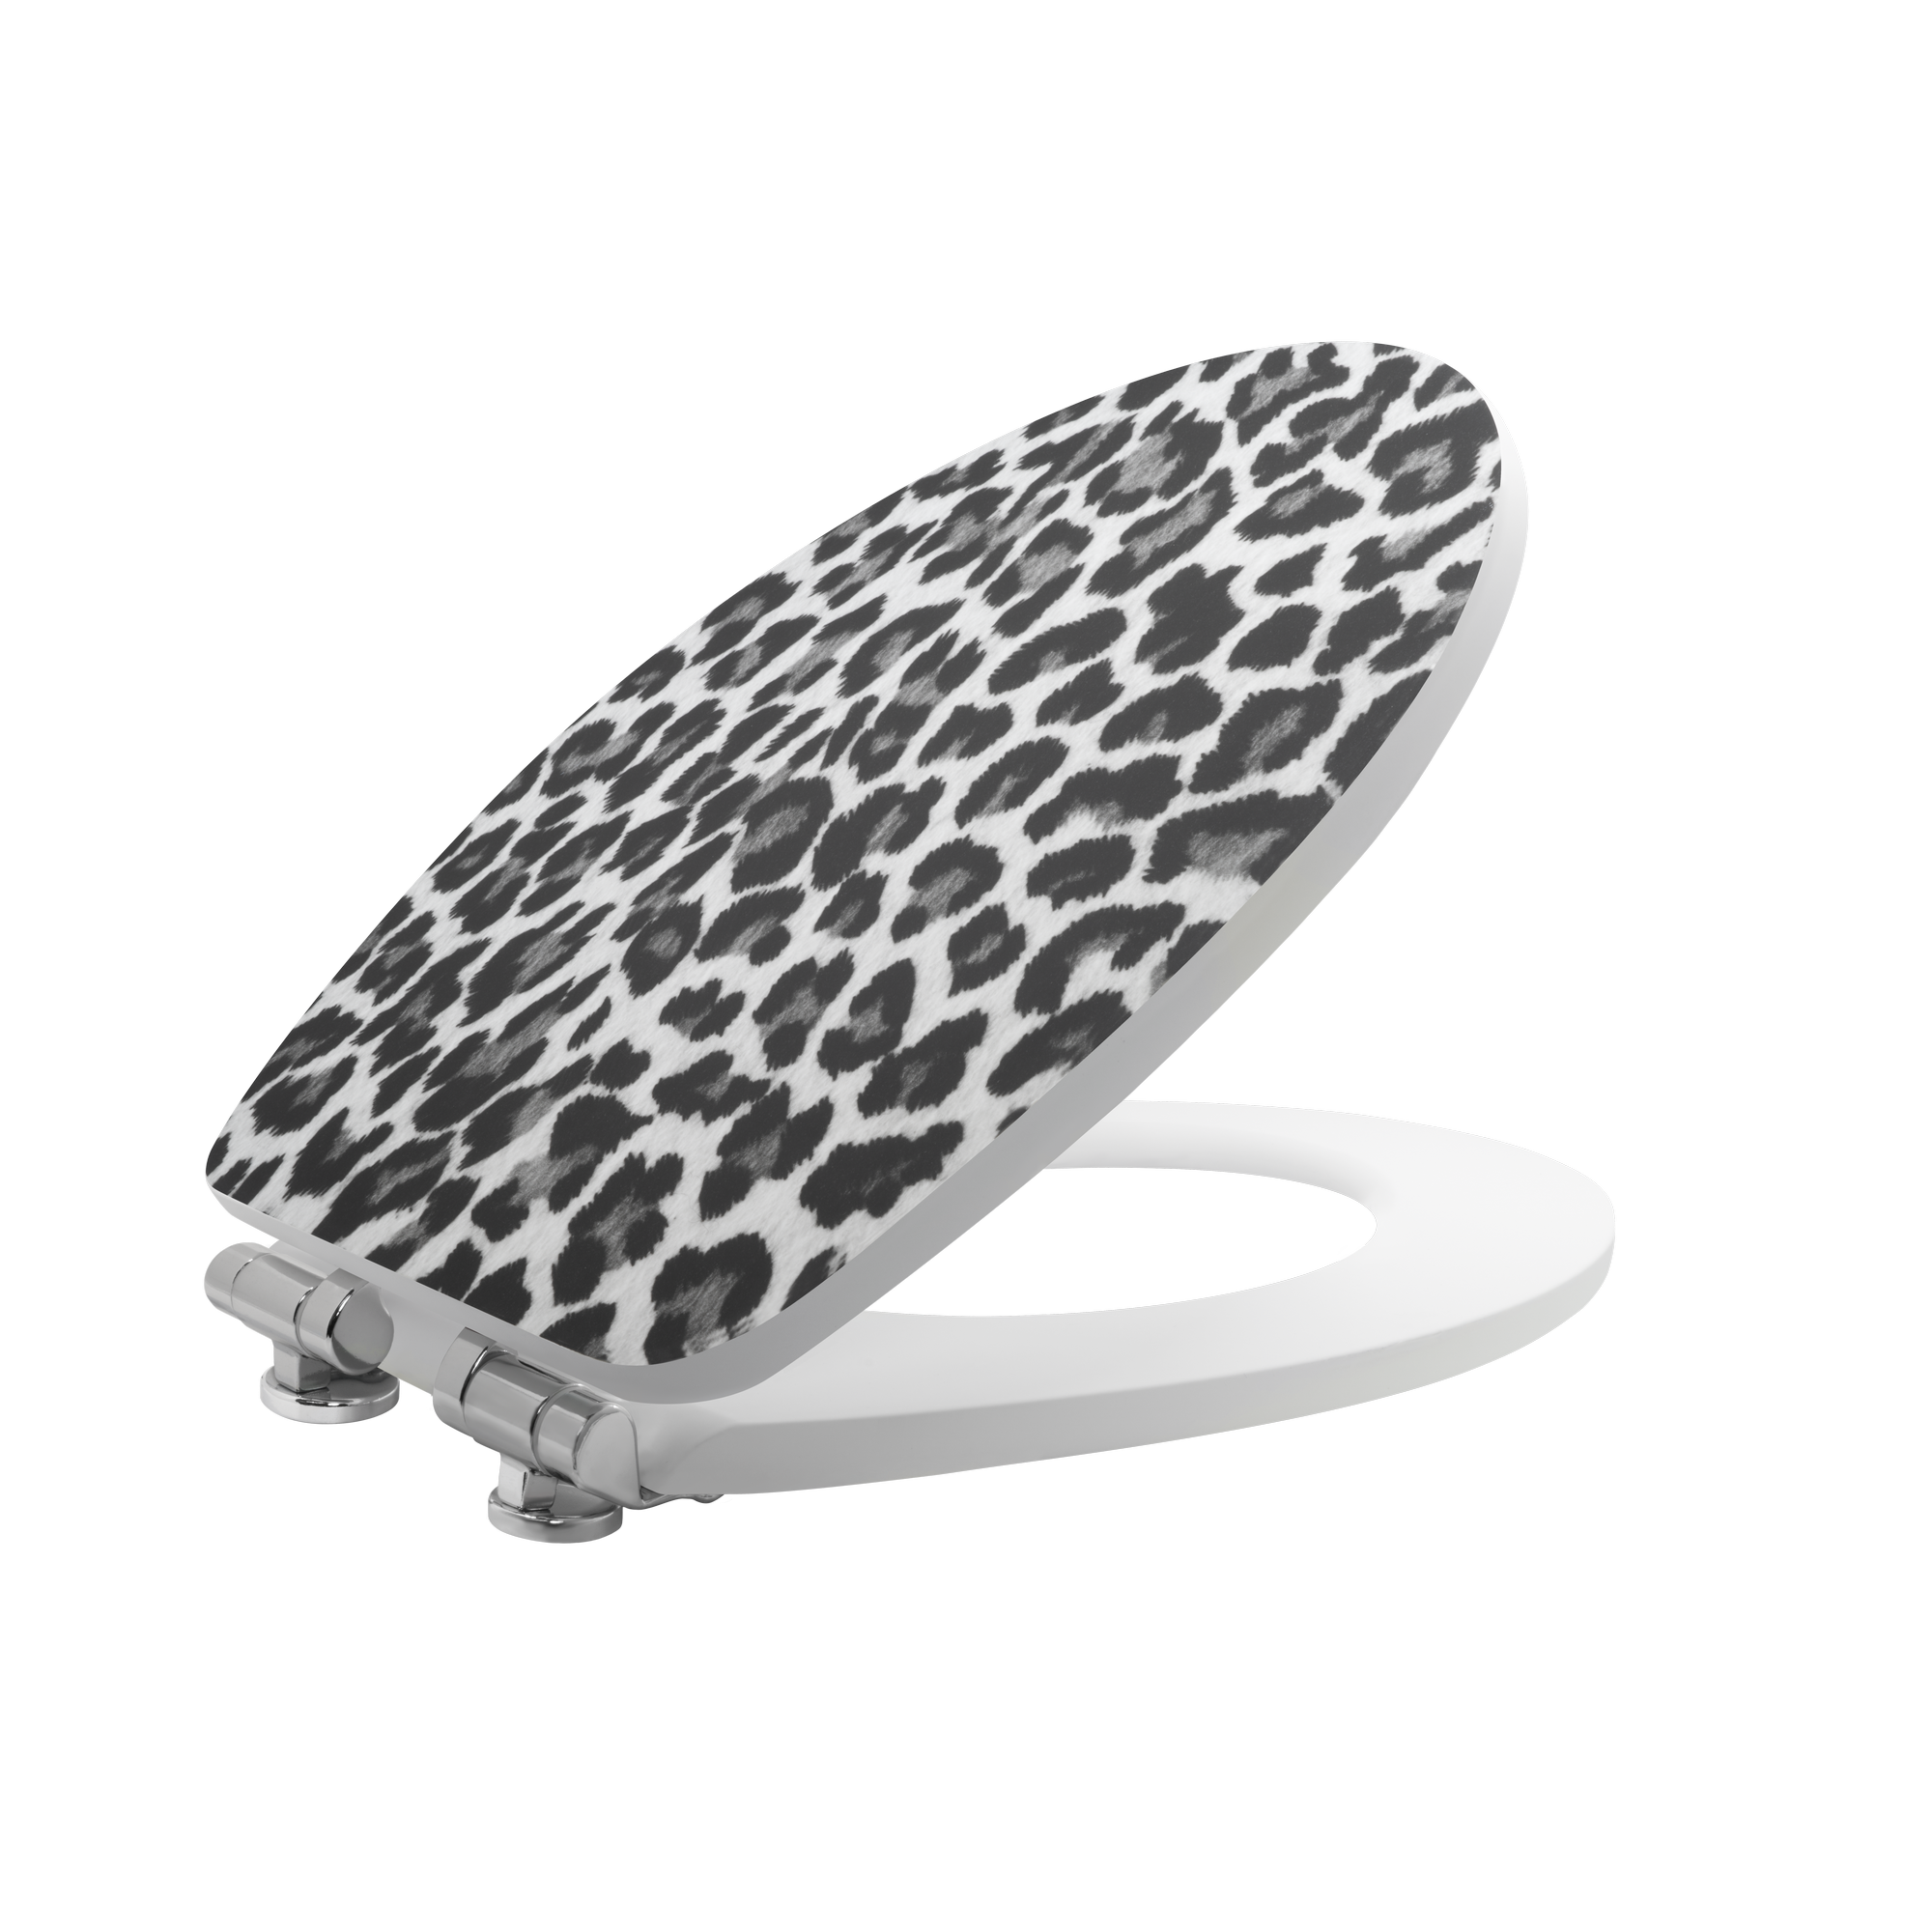 WC-Sitz 'Leo' mit Absenkautomatik und SoftTouch-Oberfläche grau/schwarz + product picture